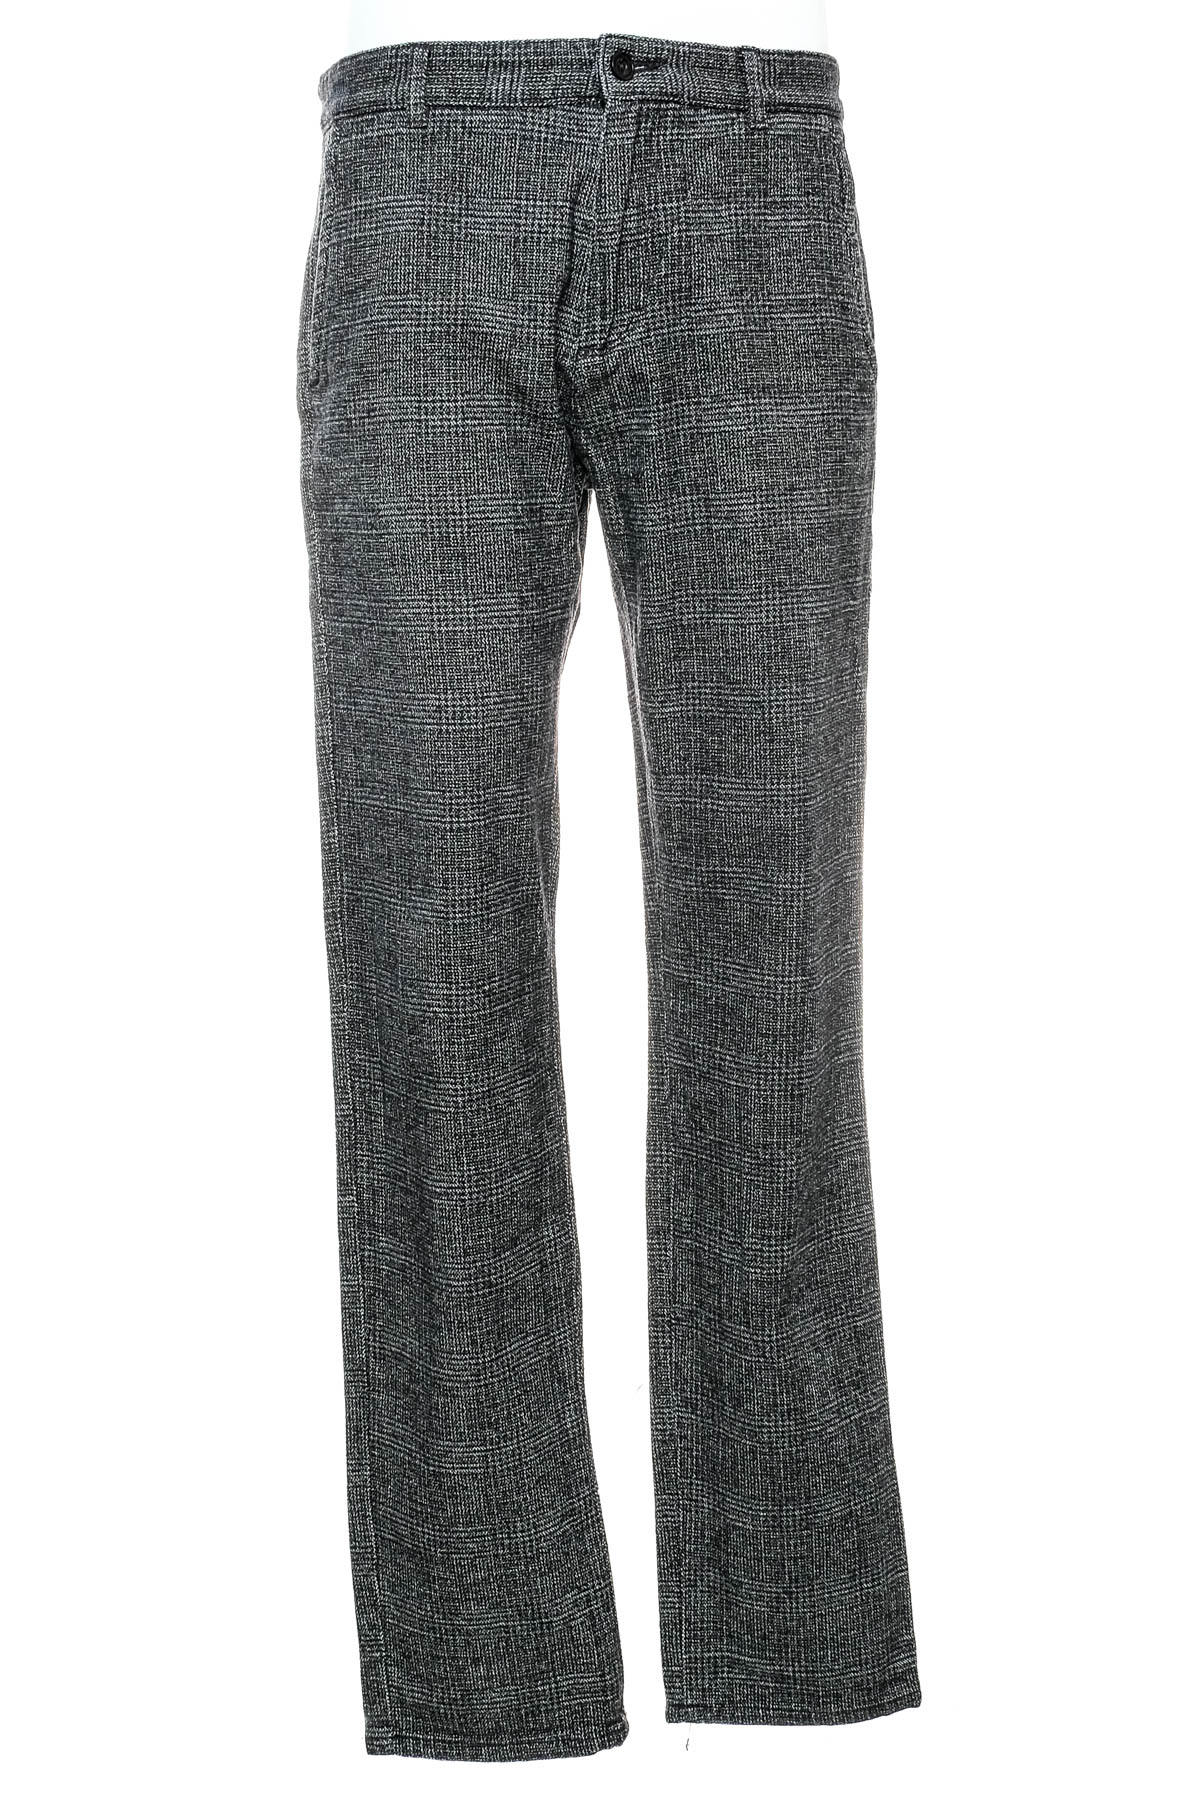 Pantalon pentru bărbați - S.Oliver - 0